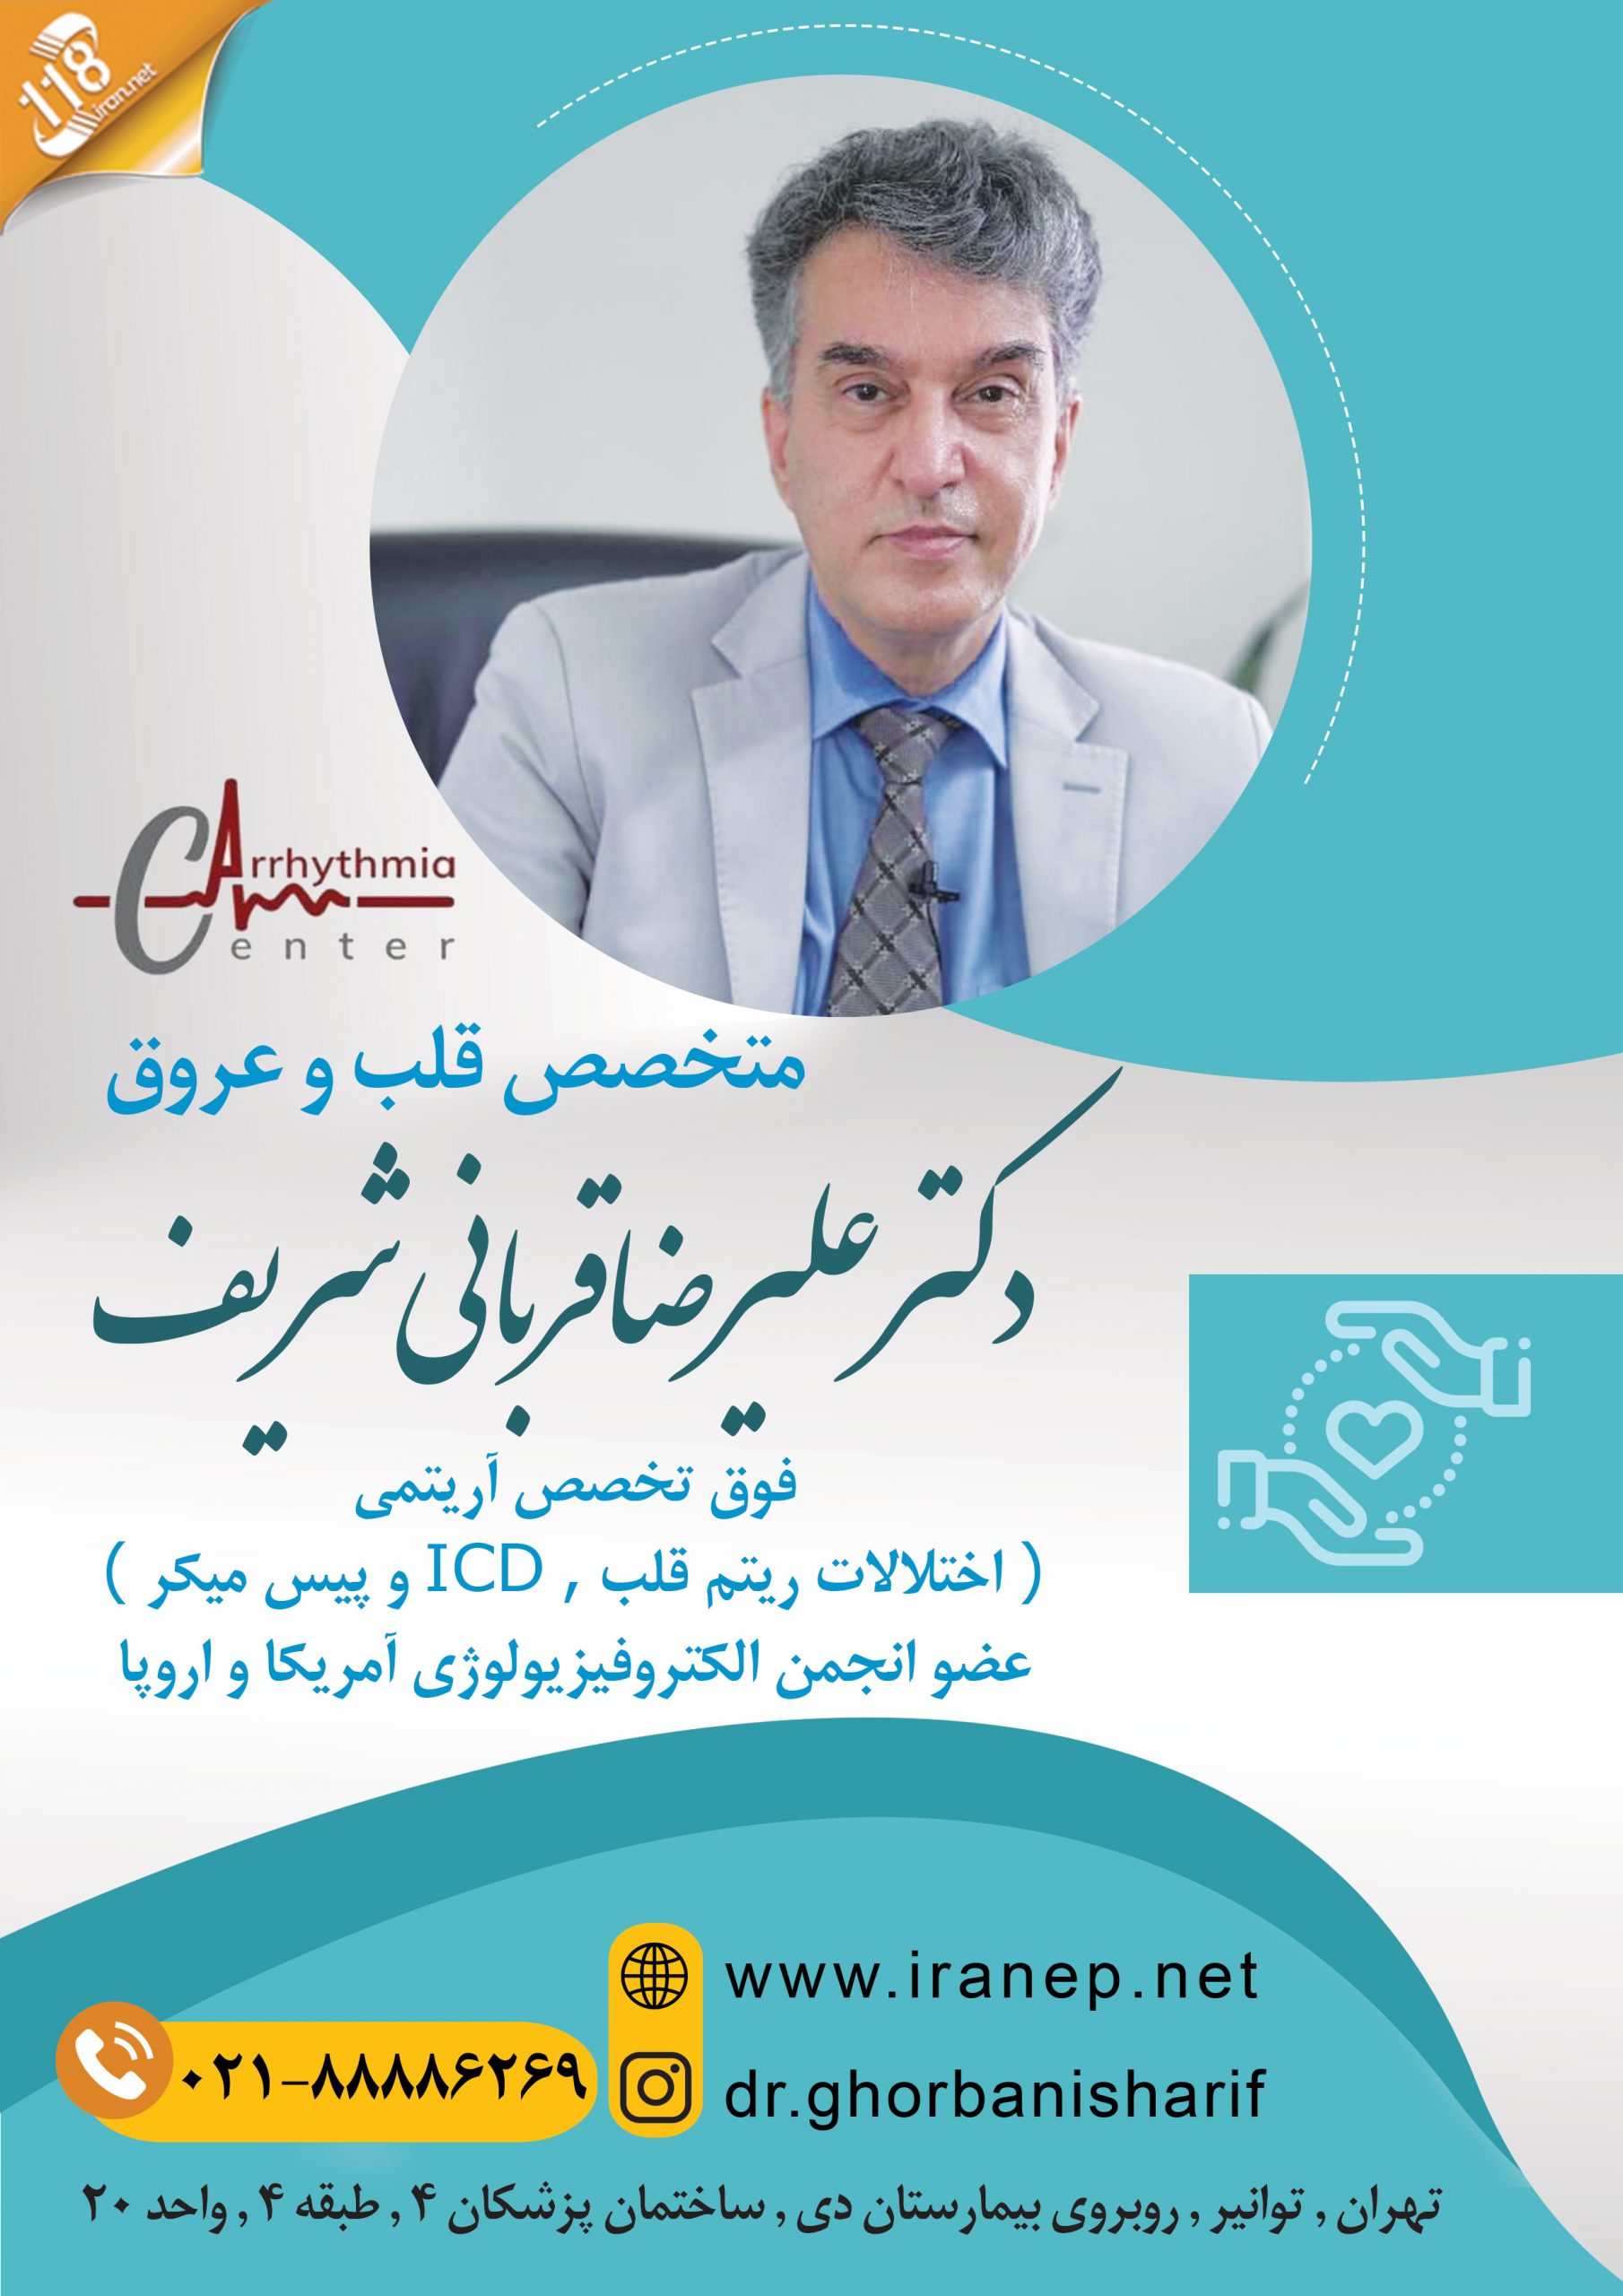  دکتر علیرضا قربانی شریف در تهران 